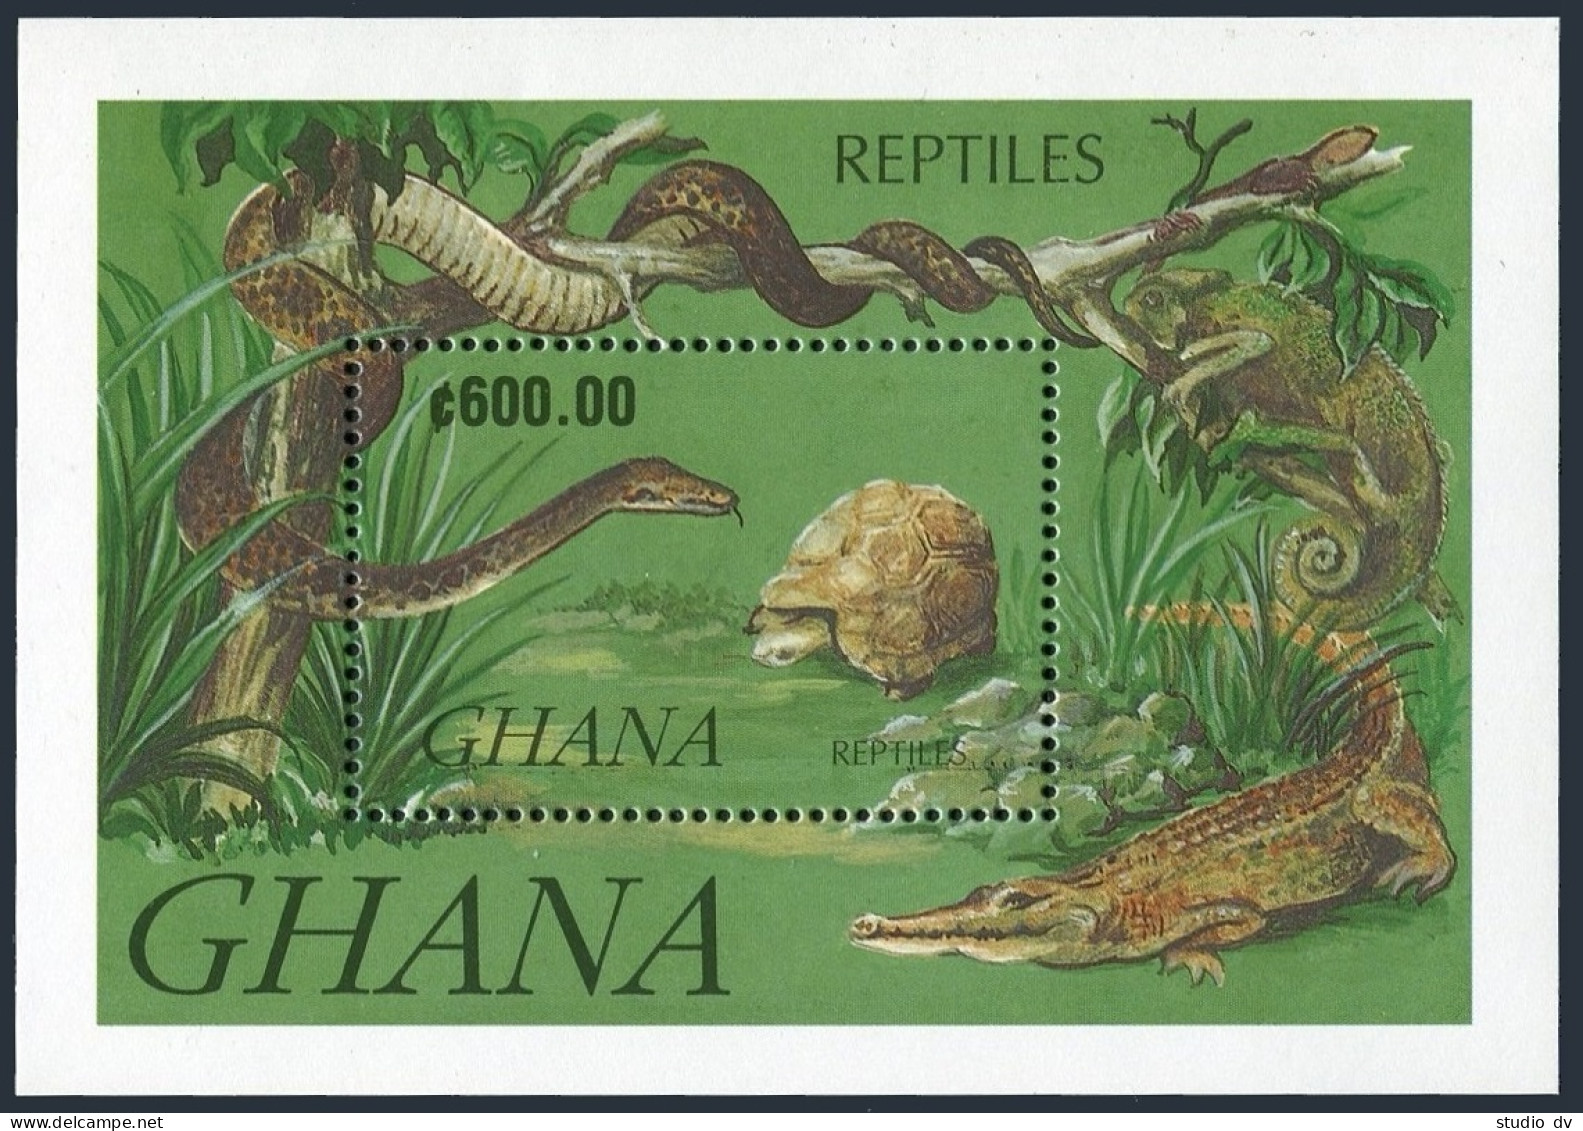 Ghana 1414-1421,1422,MNH.Mi 1606-1613,Bl.183. 1992. Reptiles, Turtle, Crocodile. - Préoblitérés